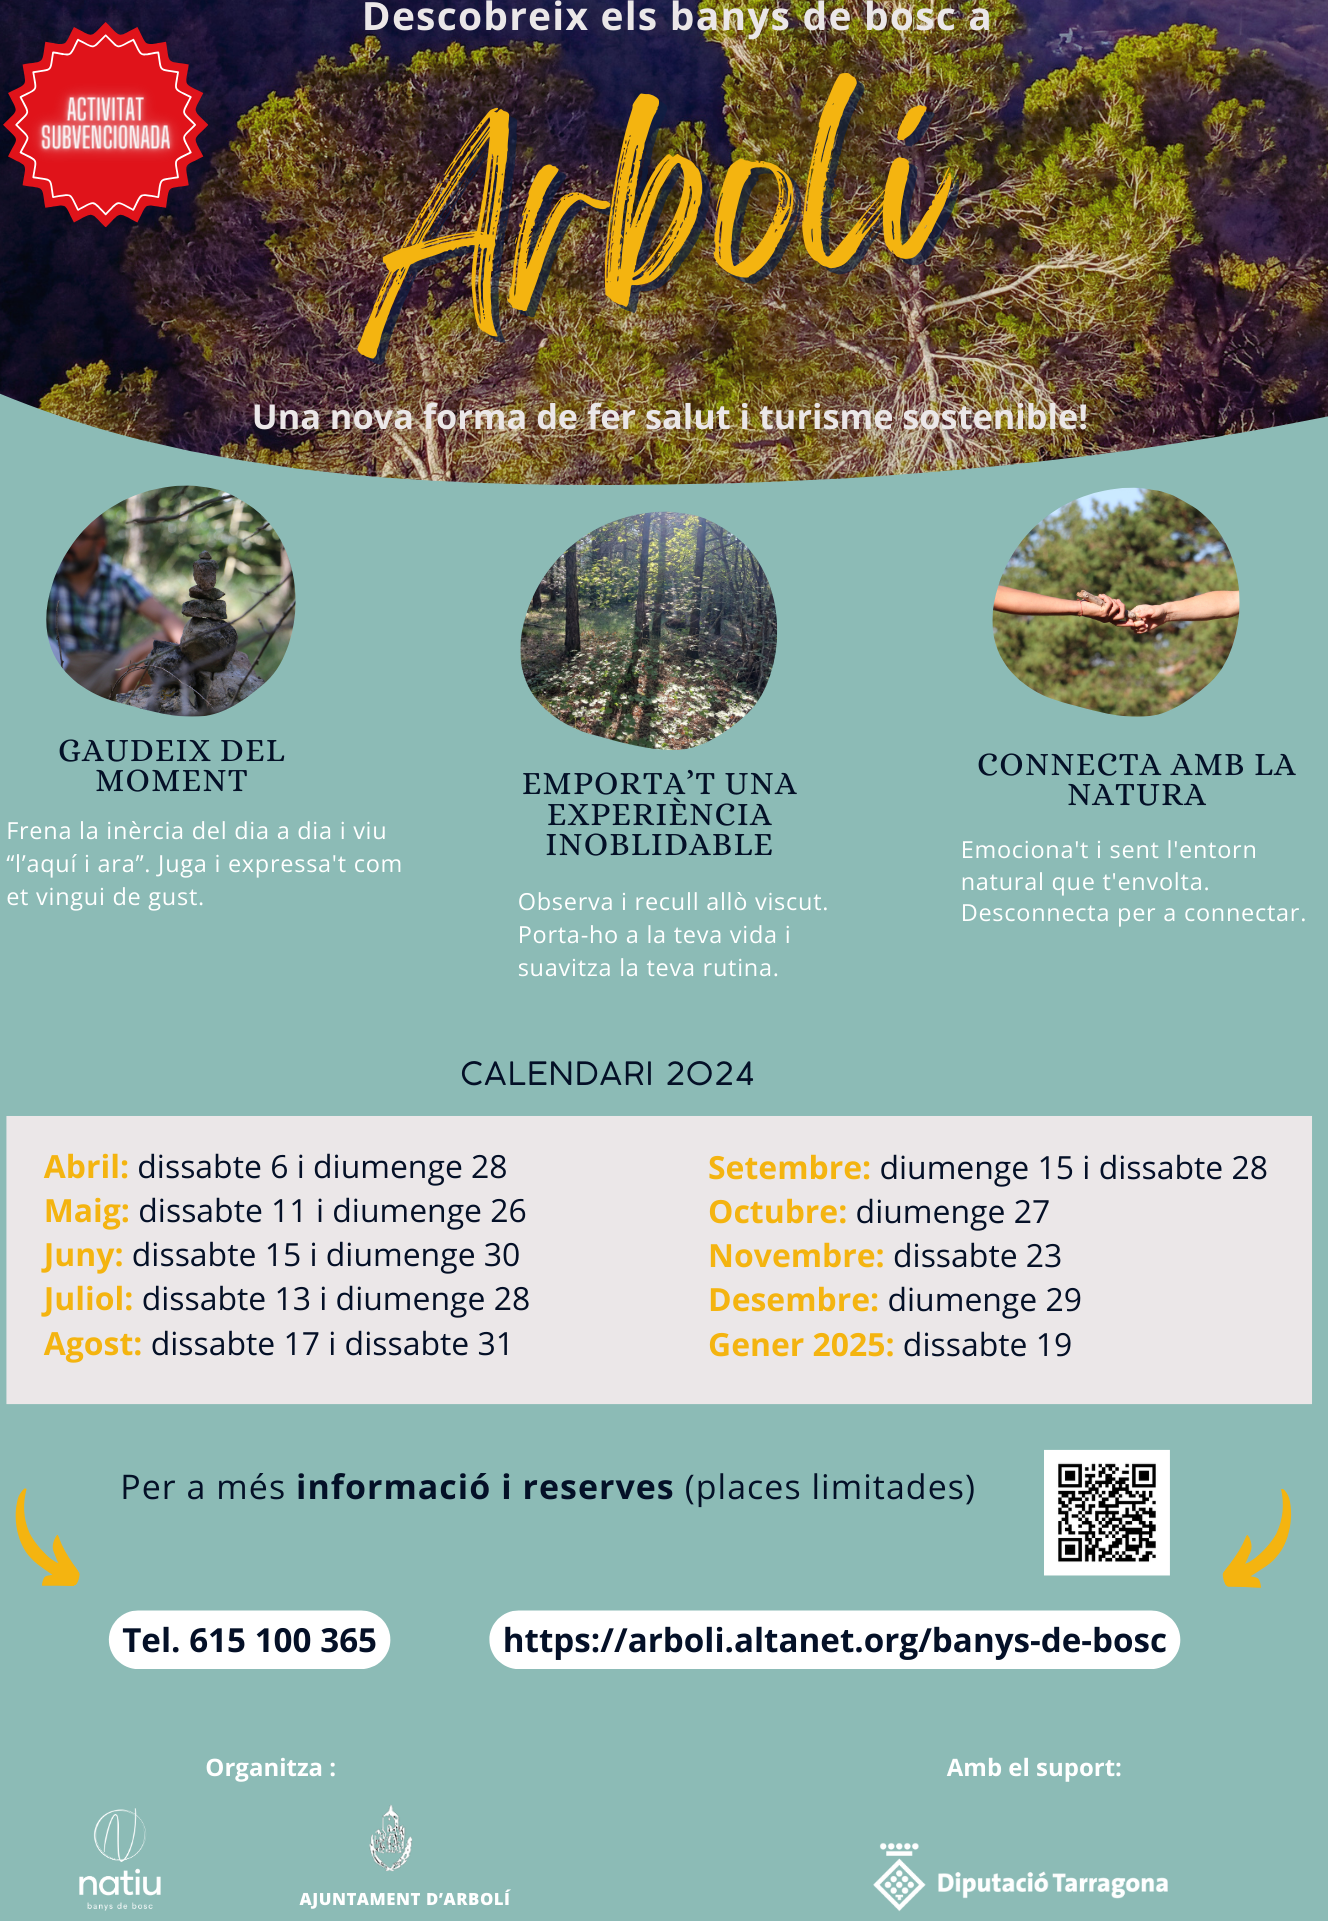 L‘Ajuntament d’Arbolí i Natiu s’uneixen per promoure el benestar a través dels banys de bosc